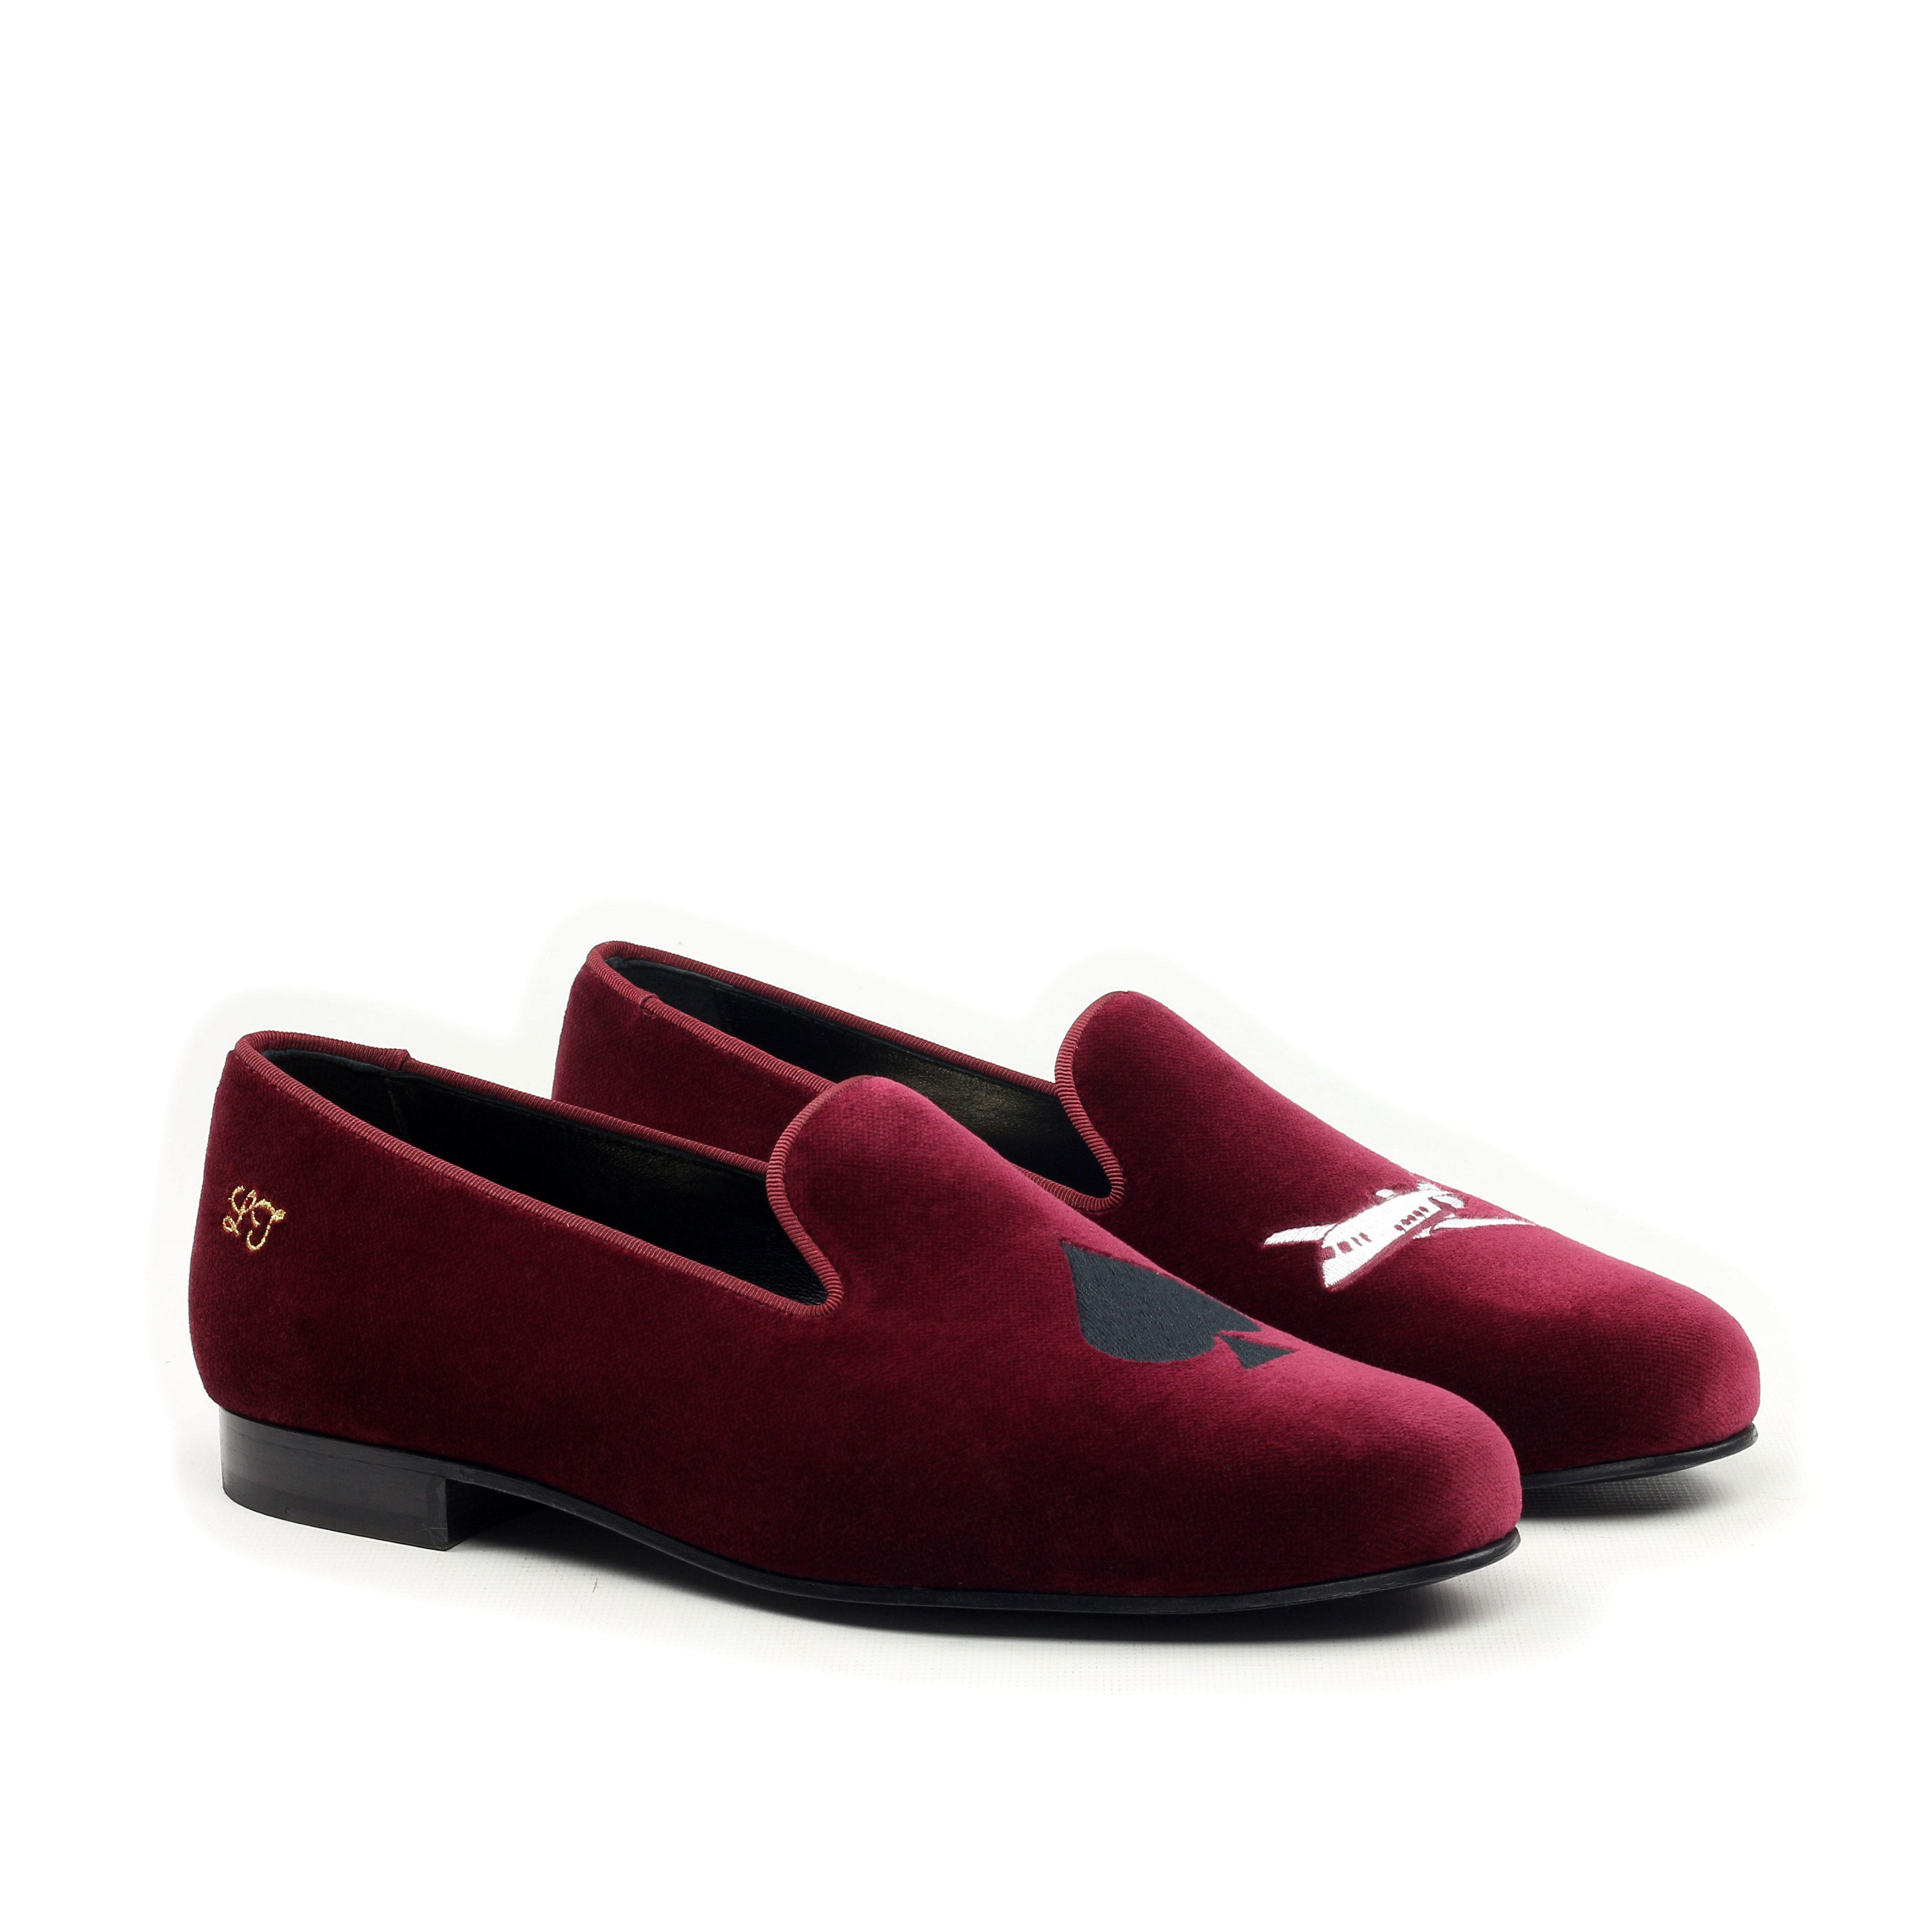 'HIGH LIFE' Burgundy Velvet Luxury Mens Slip On Loafers Initials Monogram Slippers Front Side View